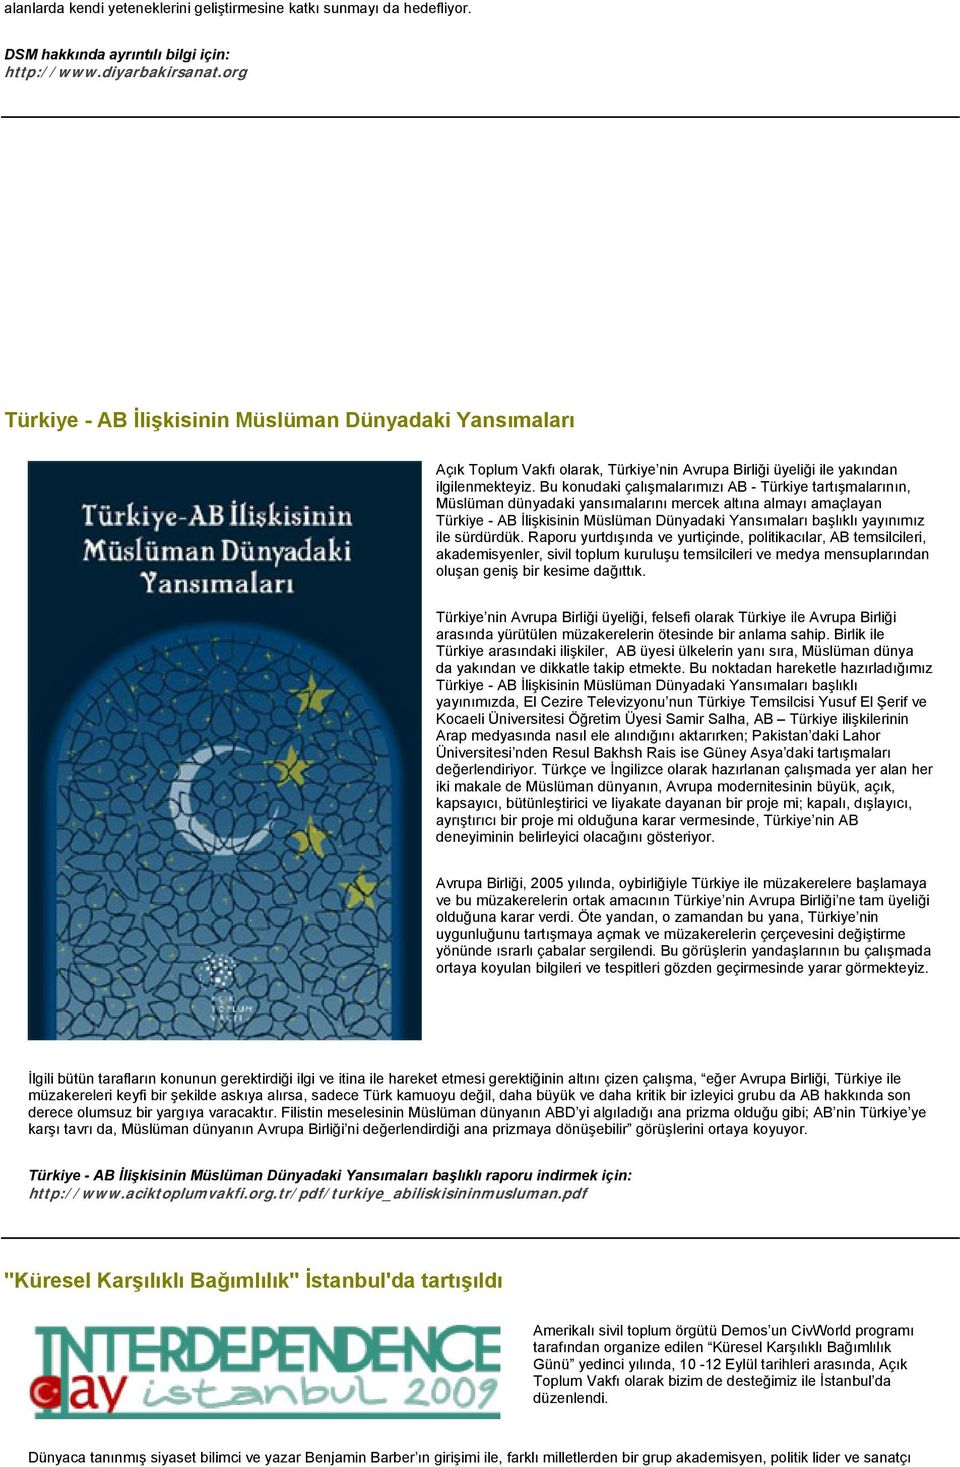 Bu konudaki çalışmalarımızı AB - Türkiye tartışmalarının, Müslüman dünyadaki yansımalarını mercek altına almayı amaçlayan Türkiye - AB İlişkisinin Müslüman Dünyadaki Yansımaları başlıklı yayınımız